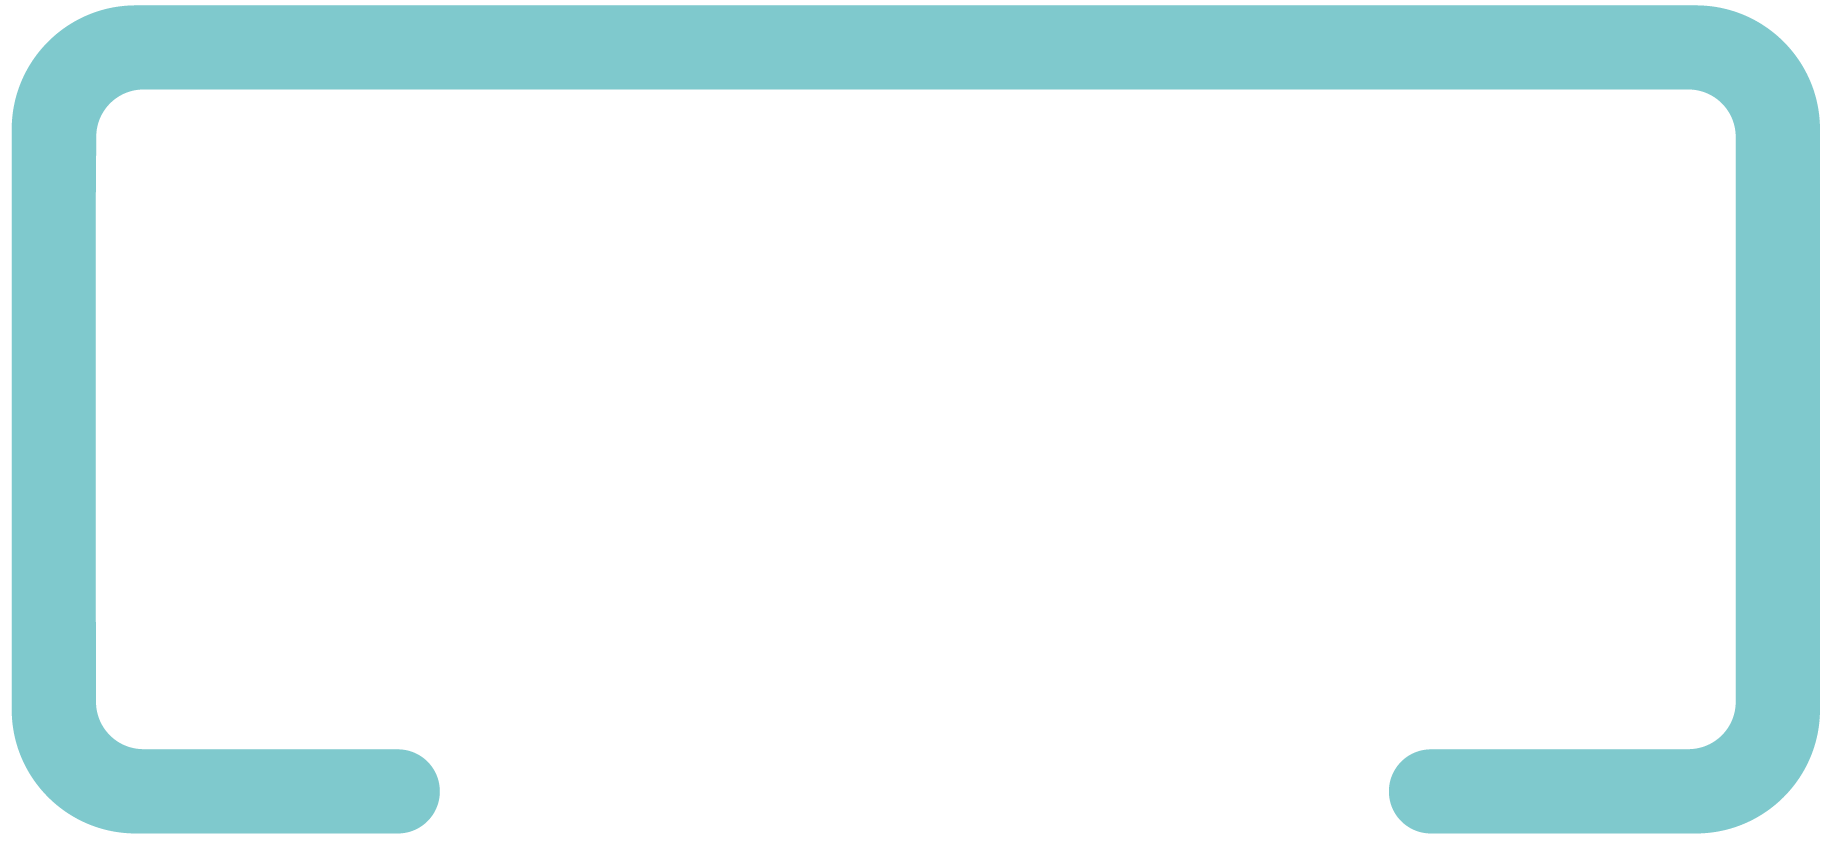 Keep it Fun